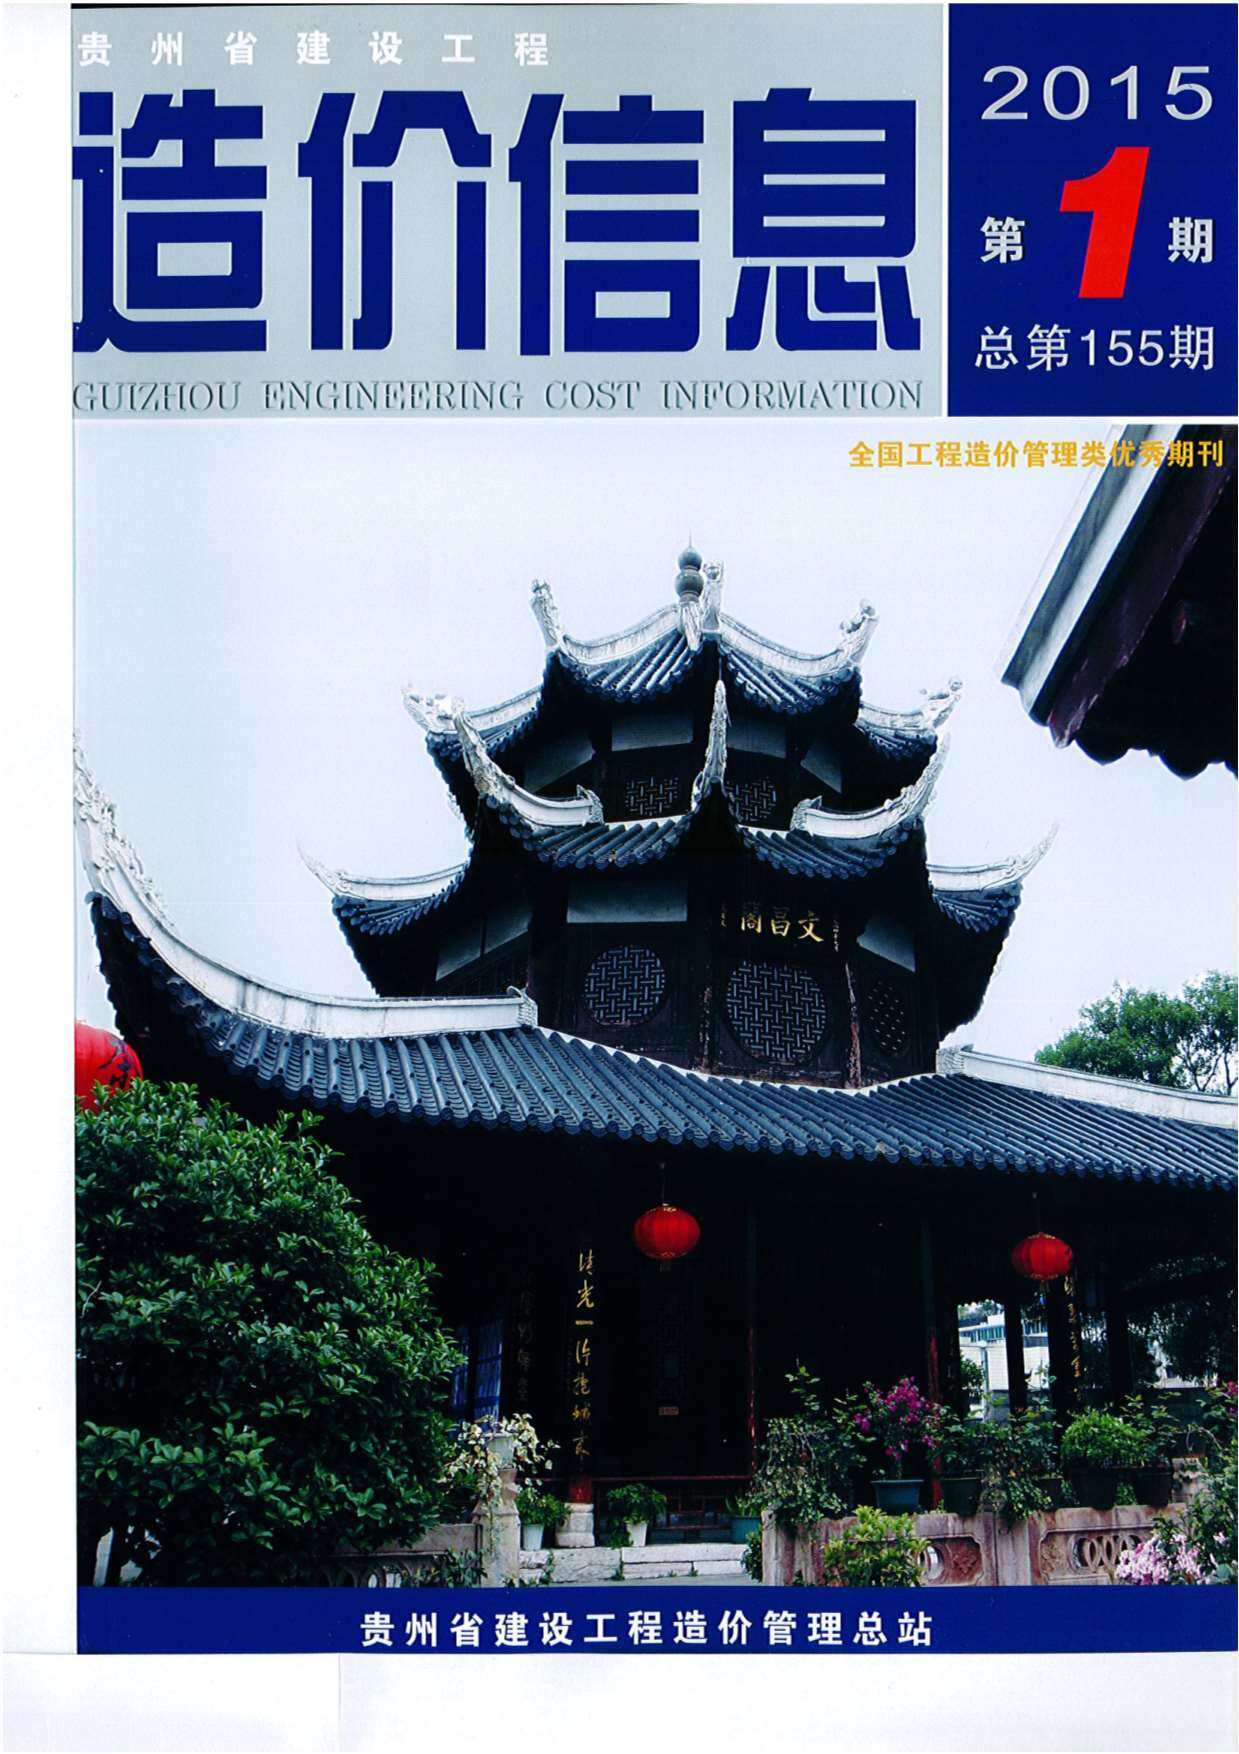 贵州省2015年1月工程造价信息期刊